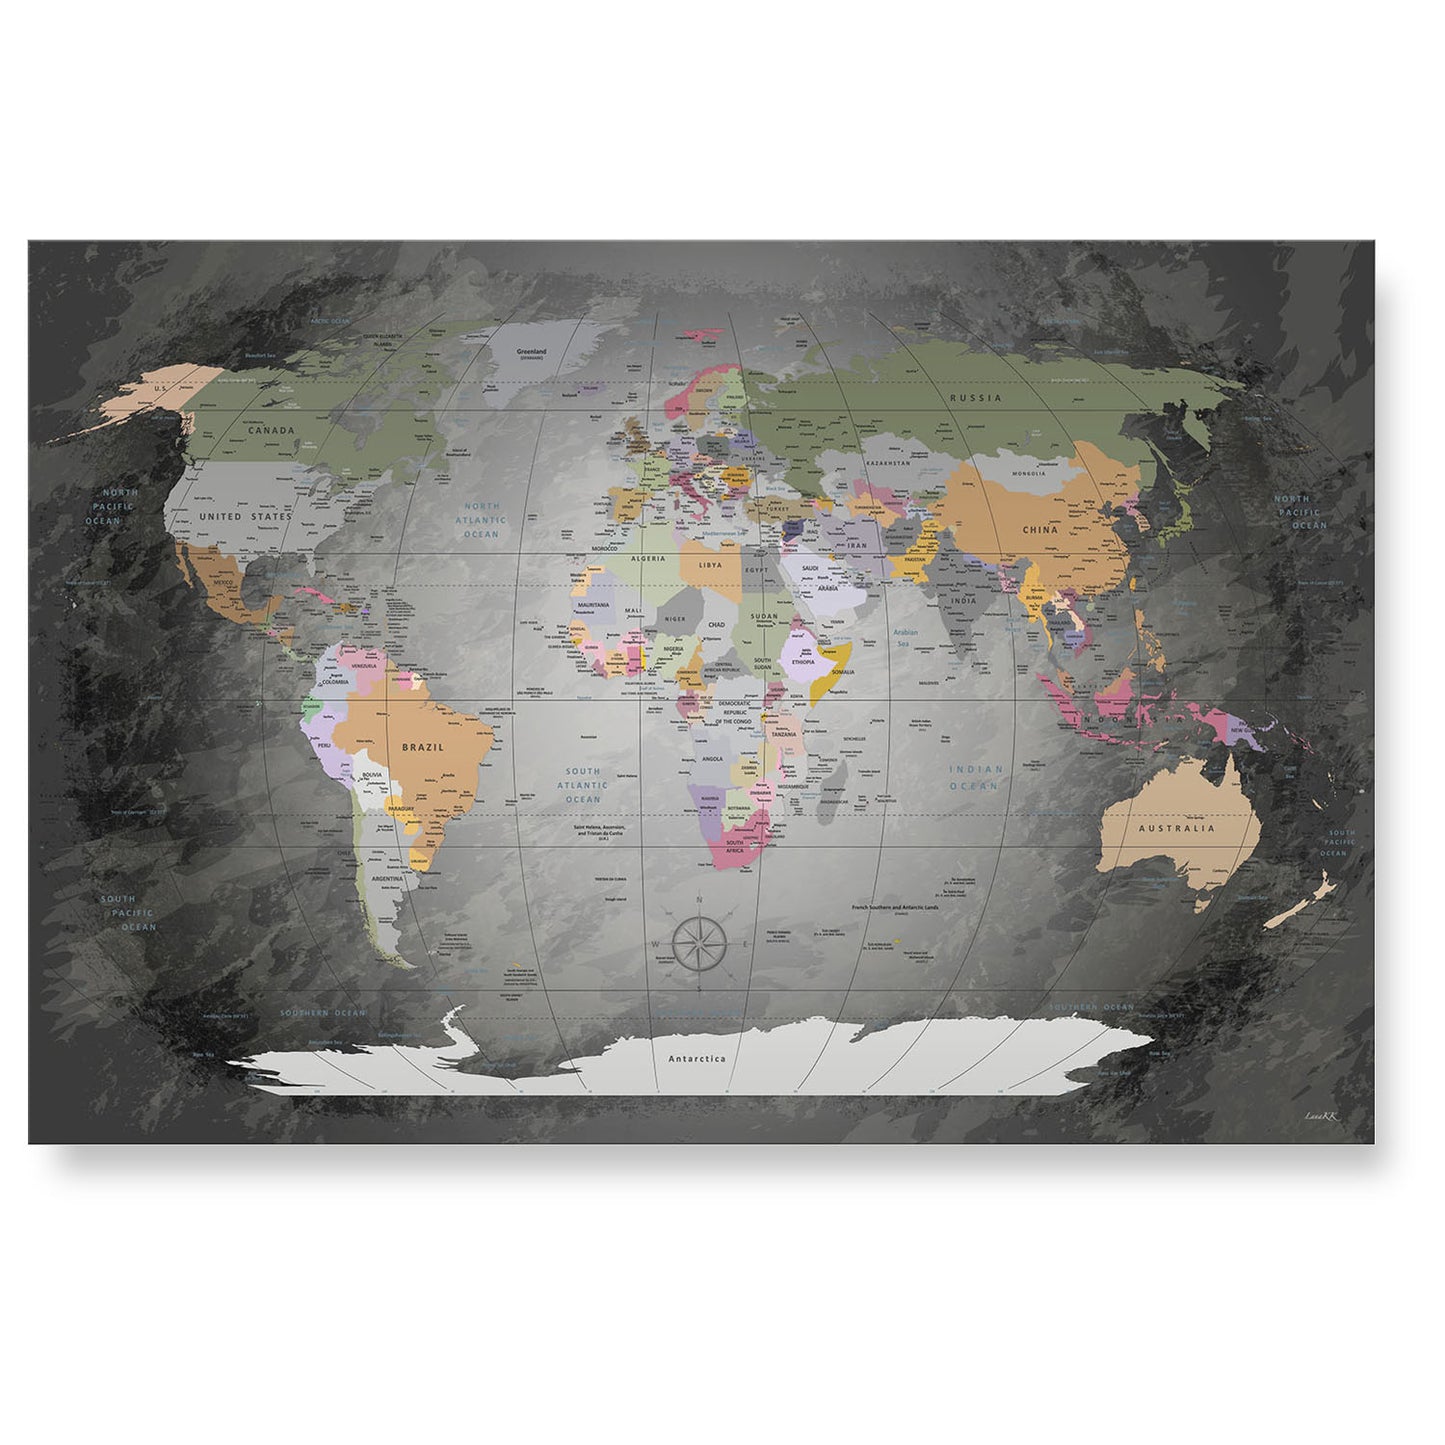 Echtglas Wandbild - Weltkarte Edelgrau - WELTKARTEN24